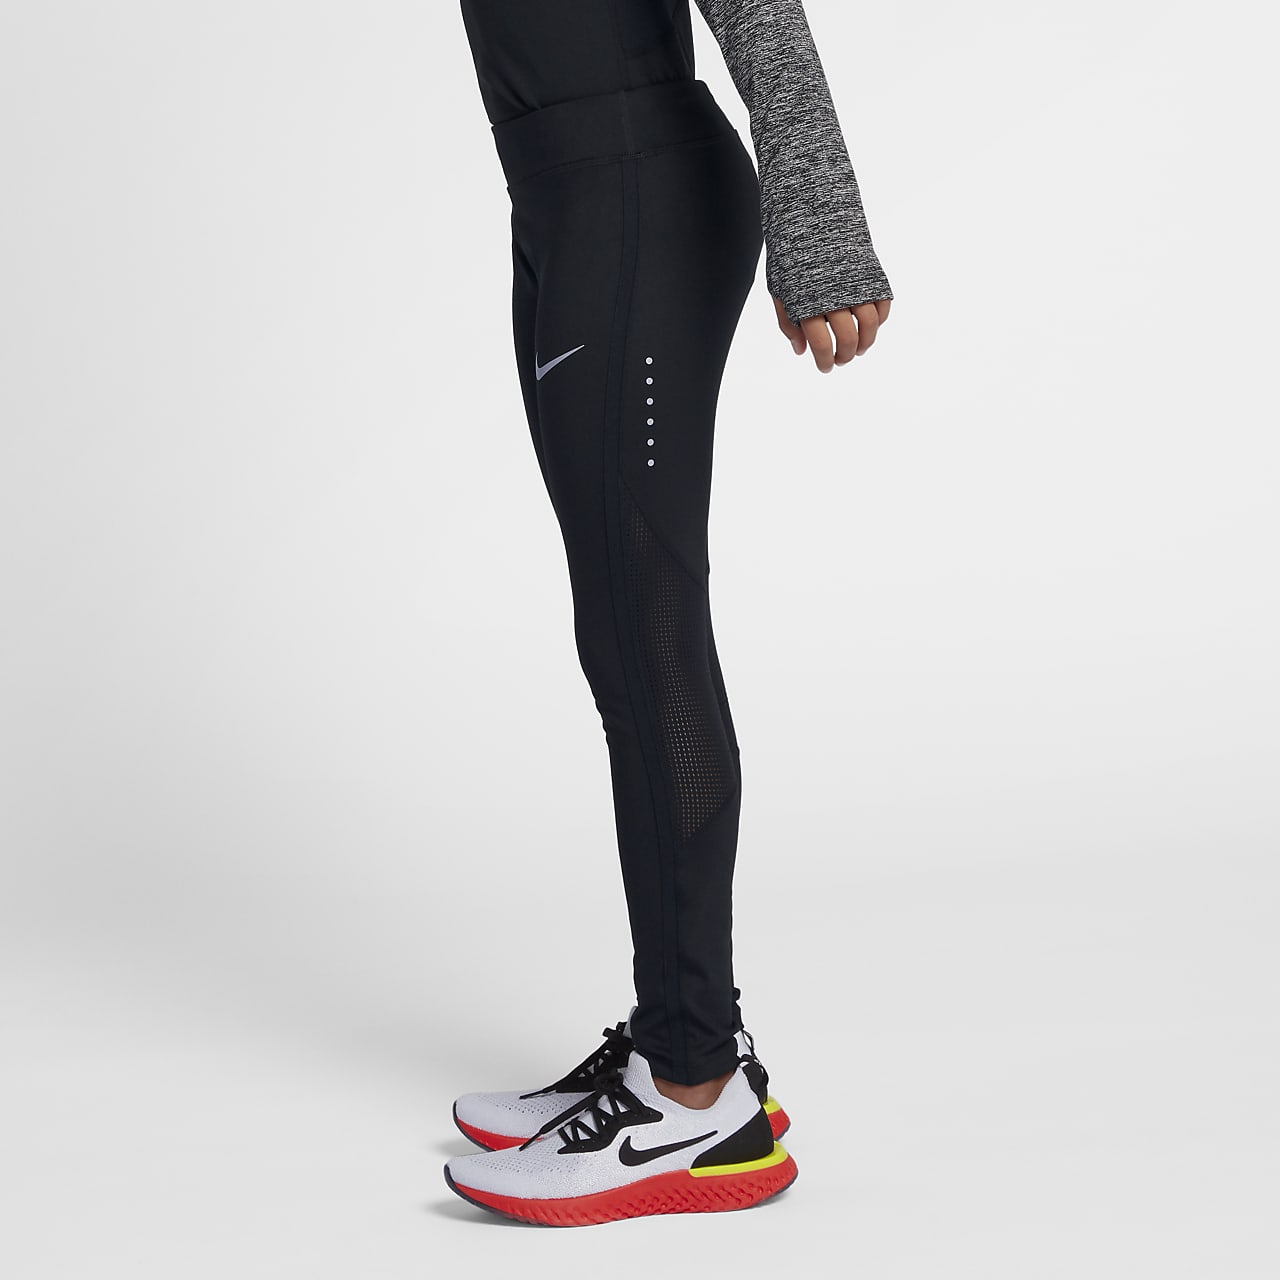 Nike Women's Running Tights (Small) DRI-FIT Half Tights Black